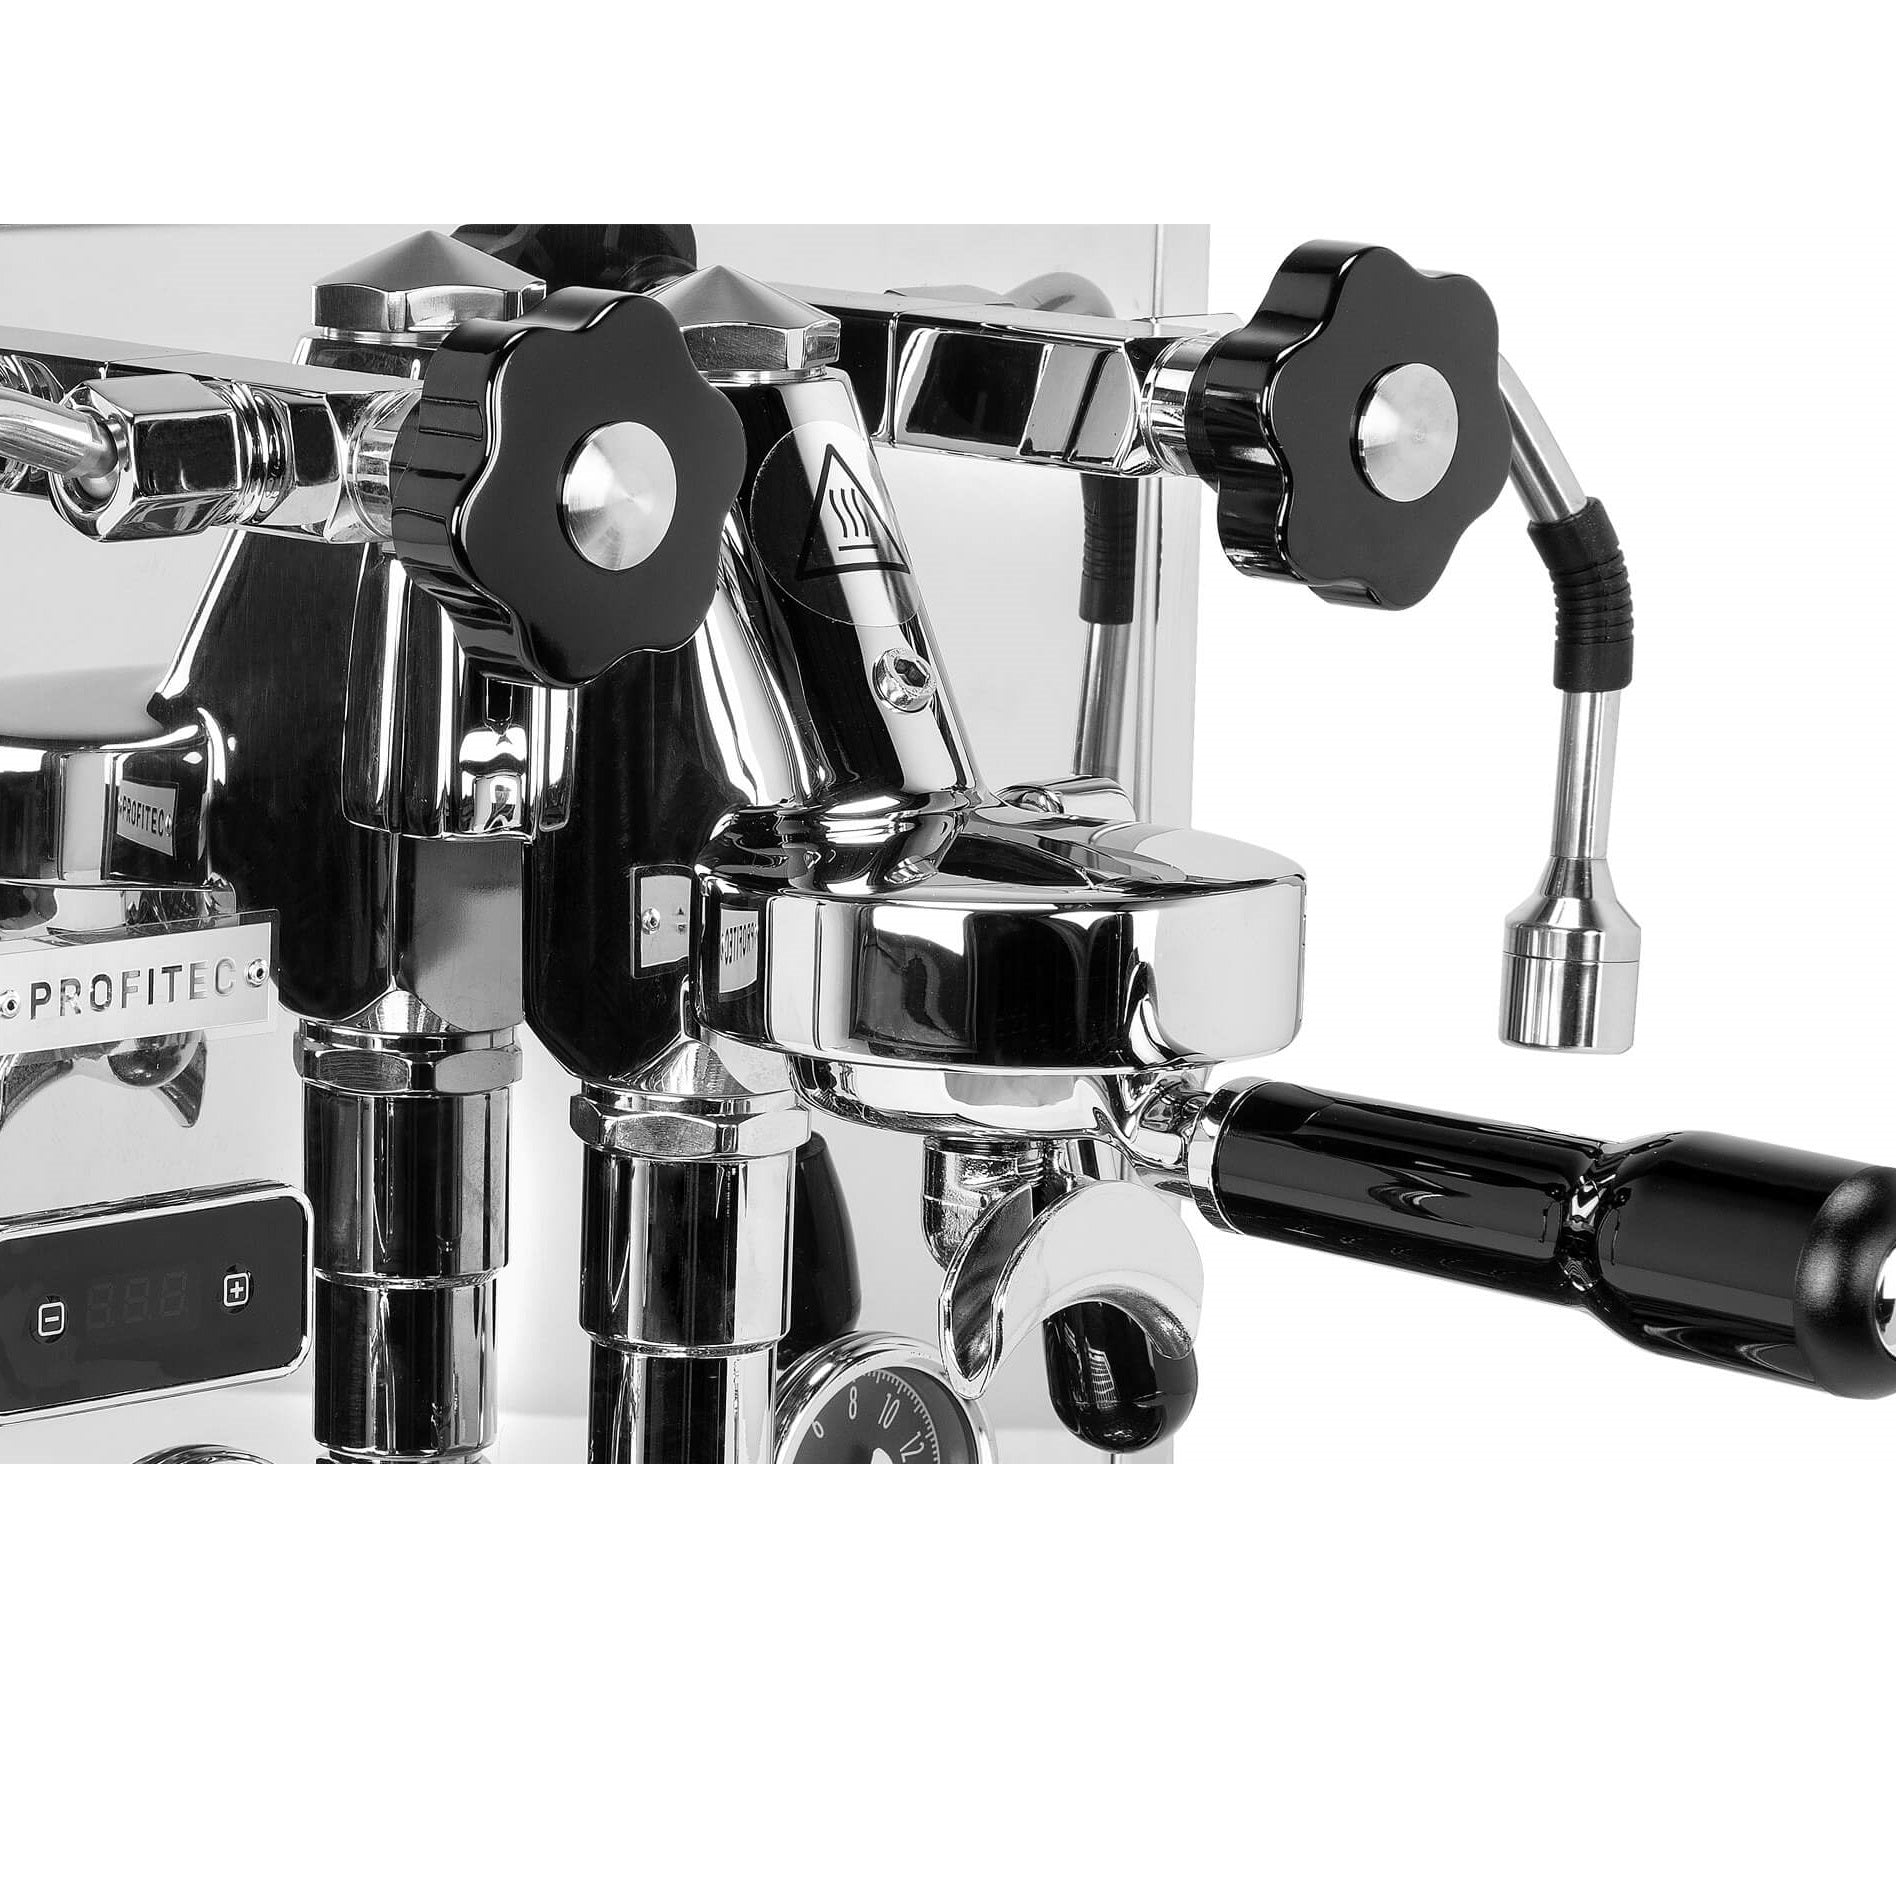 Profitec Pro 600 PID Espresso Machine